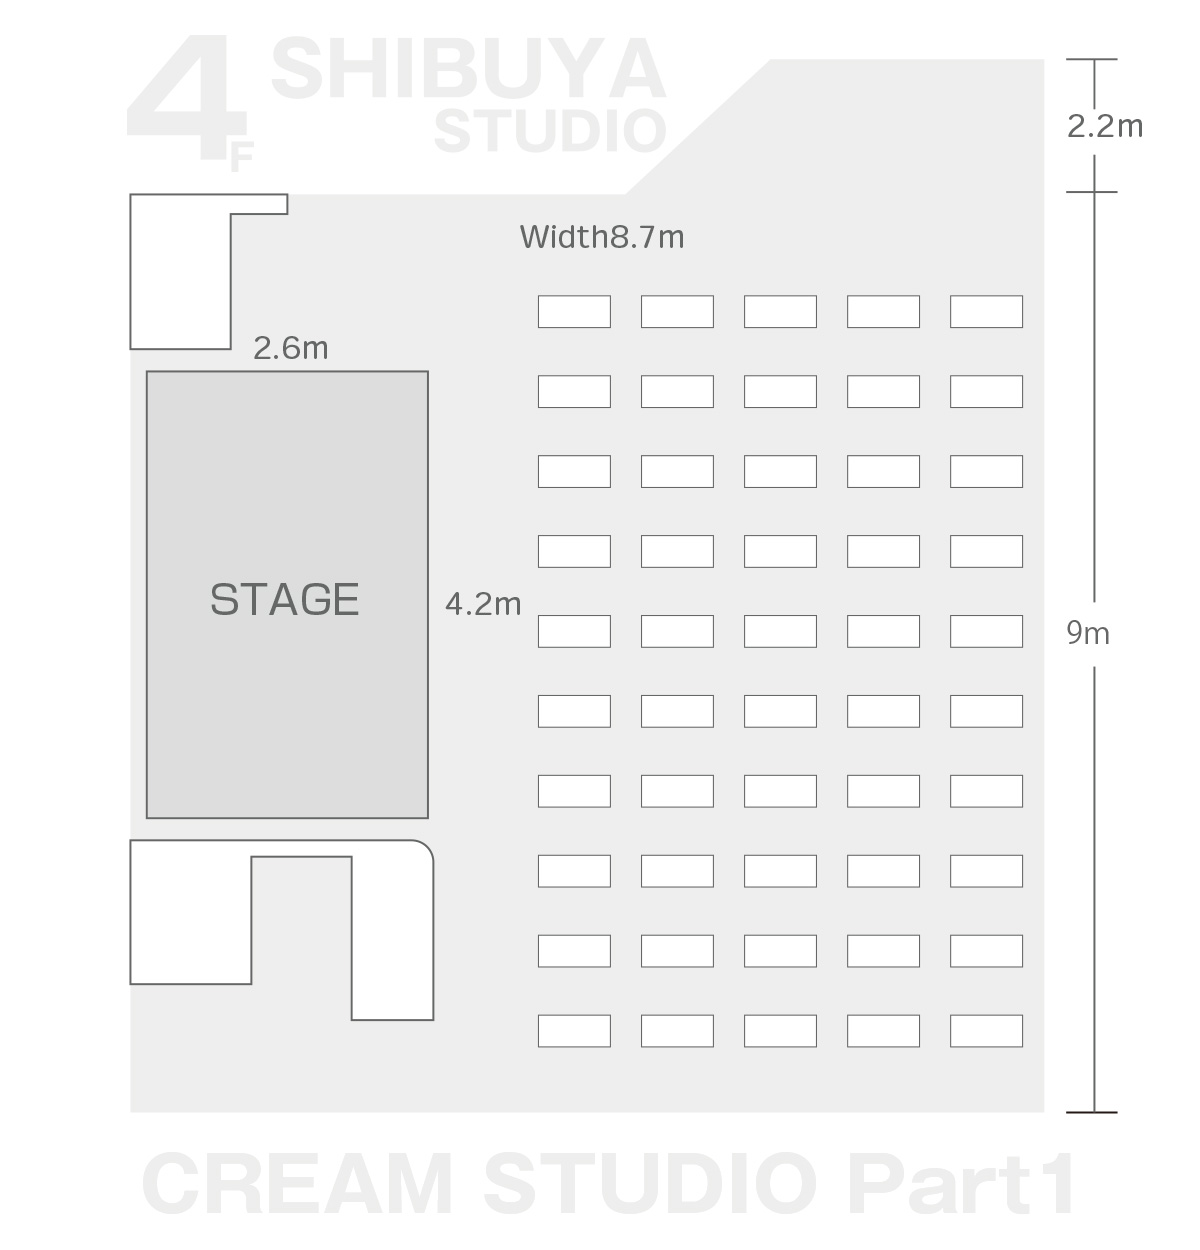 CREAM STUDIO Part1 レンタルスペース、レンタルスタジオ